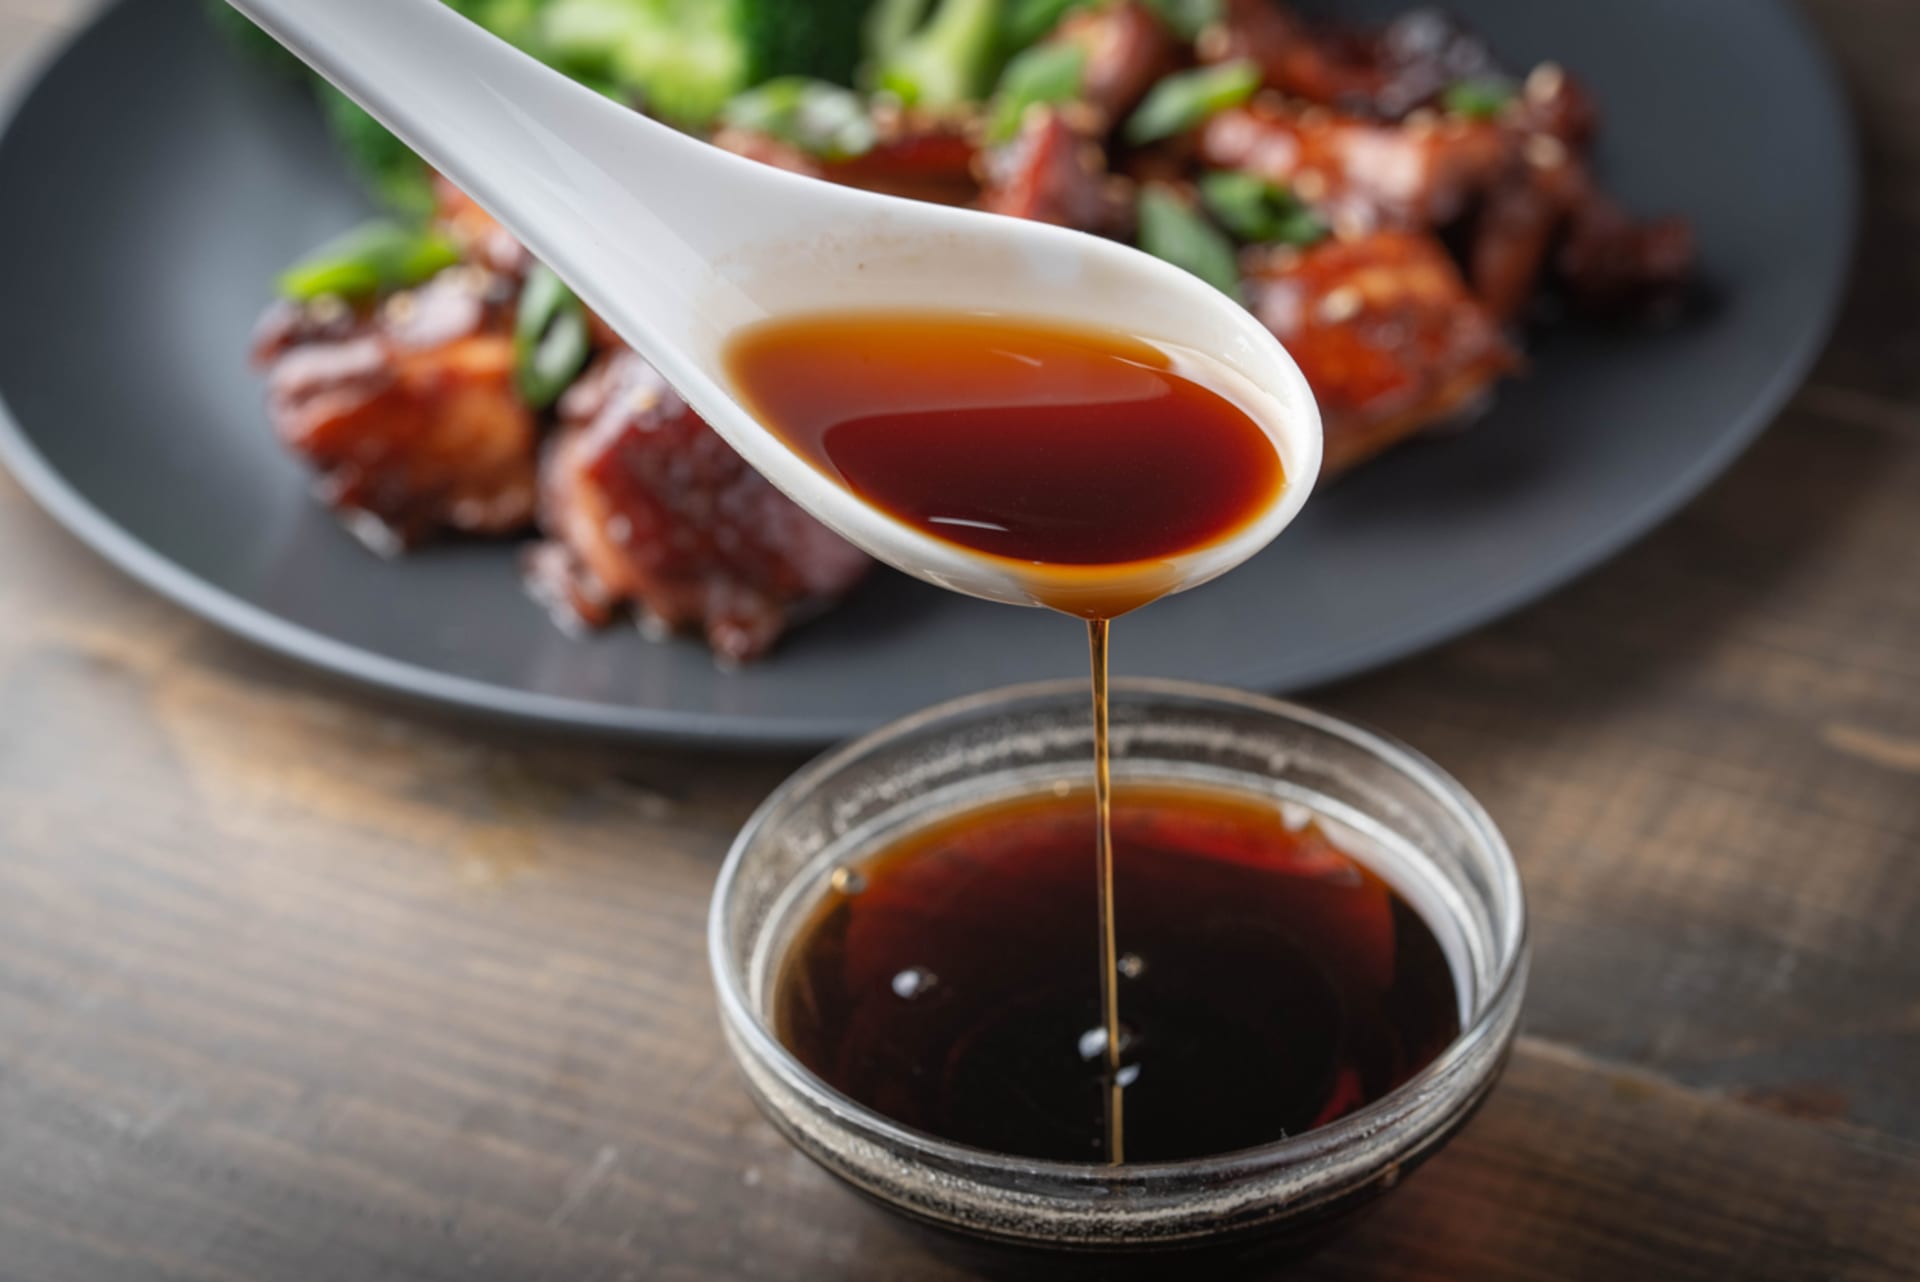 Sójová omáčka neodmyslitelně patří k asijským pokrmům.